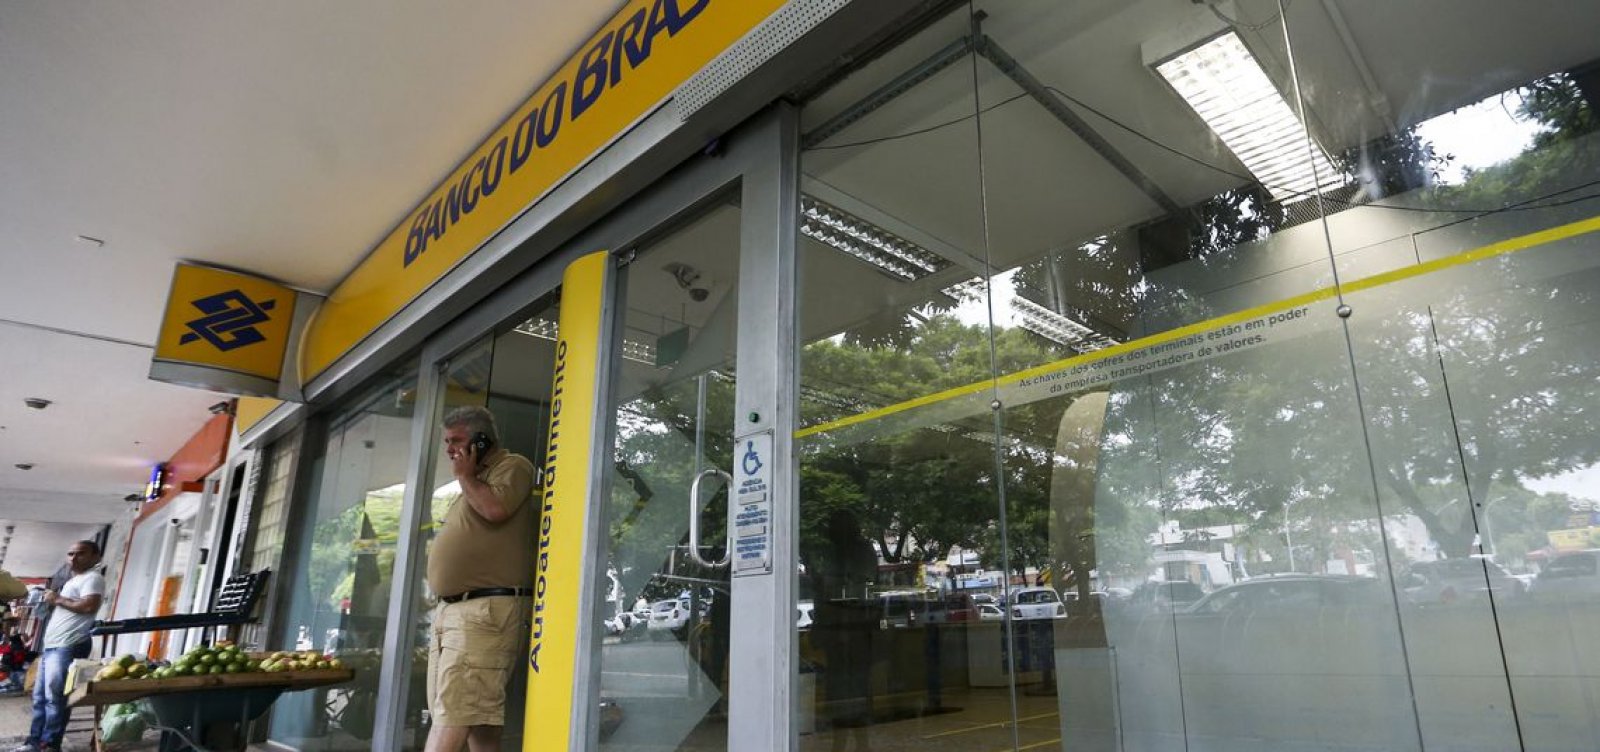 Equipe de Paulo Guedes avalia privatização do Banco do Brasil, diz jornal